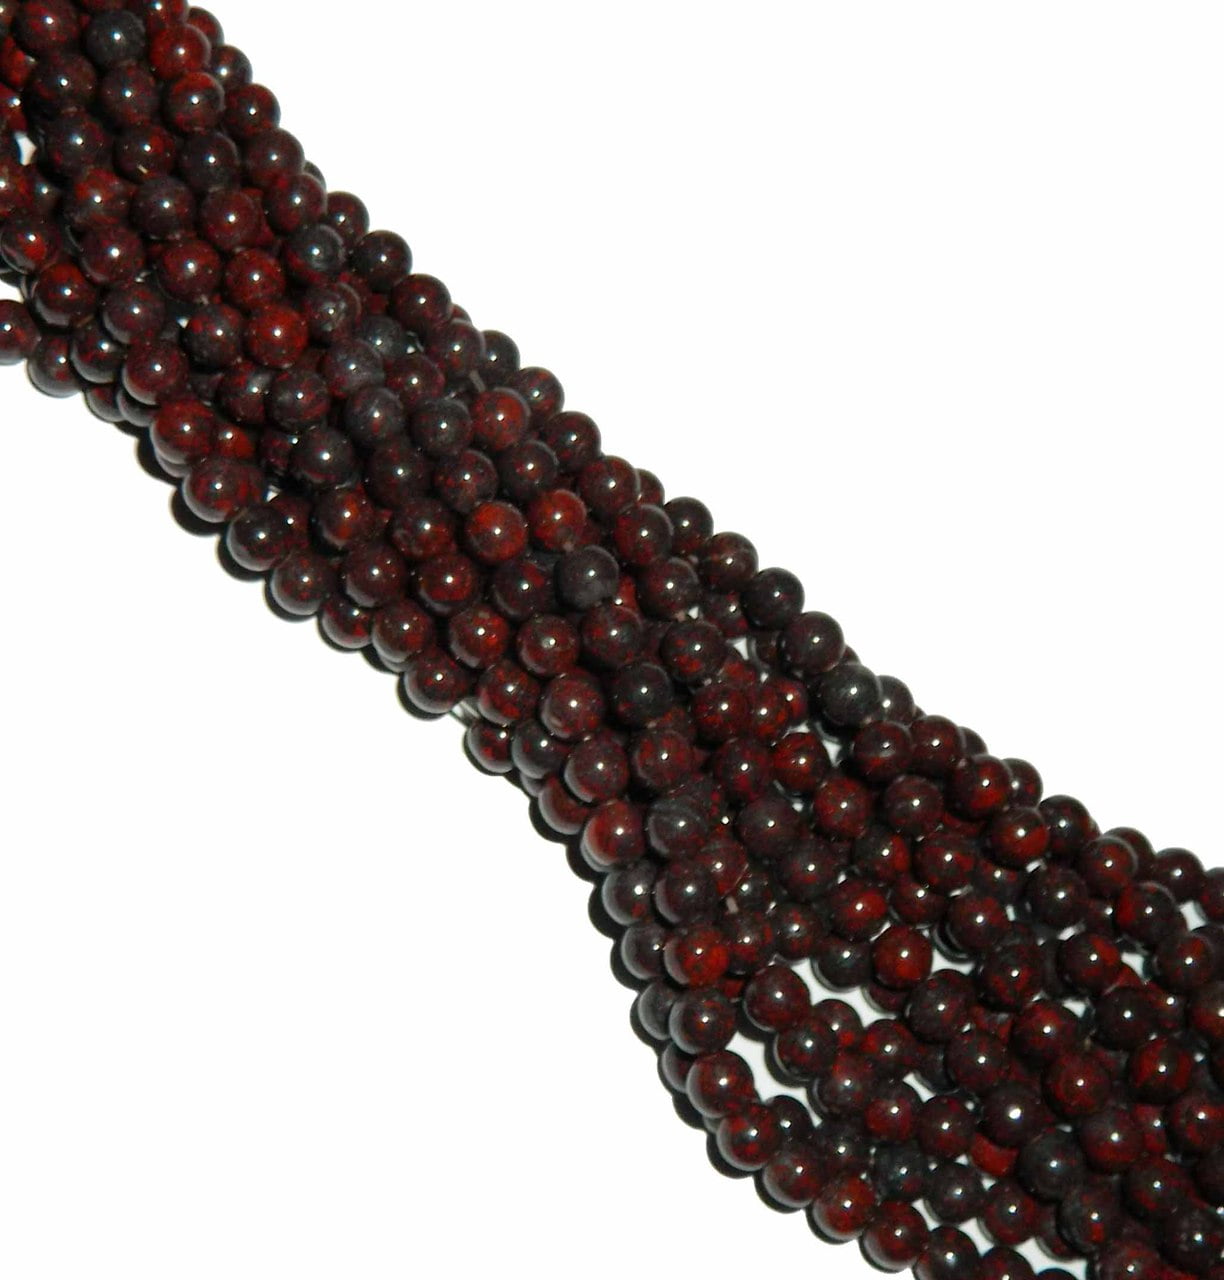 Natural Round Dark Red Poppy Flower Jasper Stone Beads For Jewelry Making 15" GI 